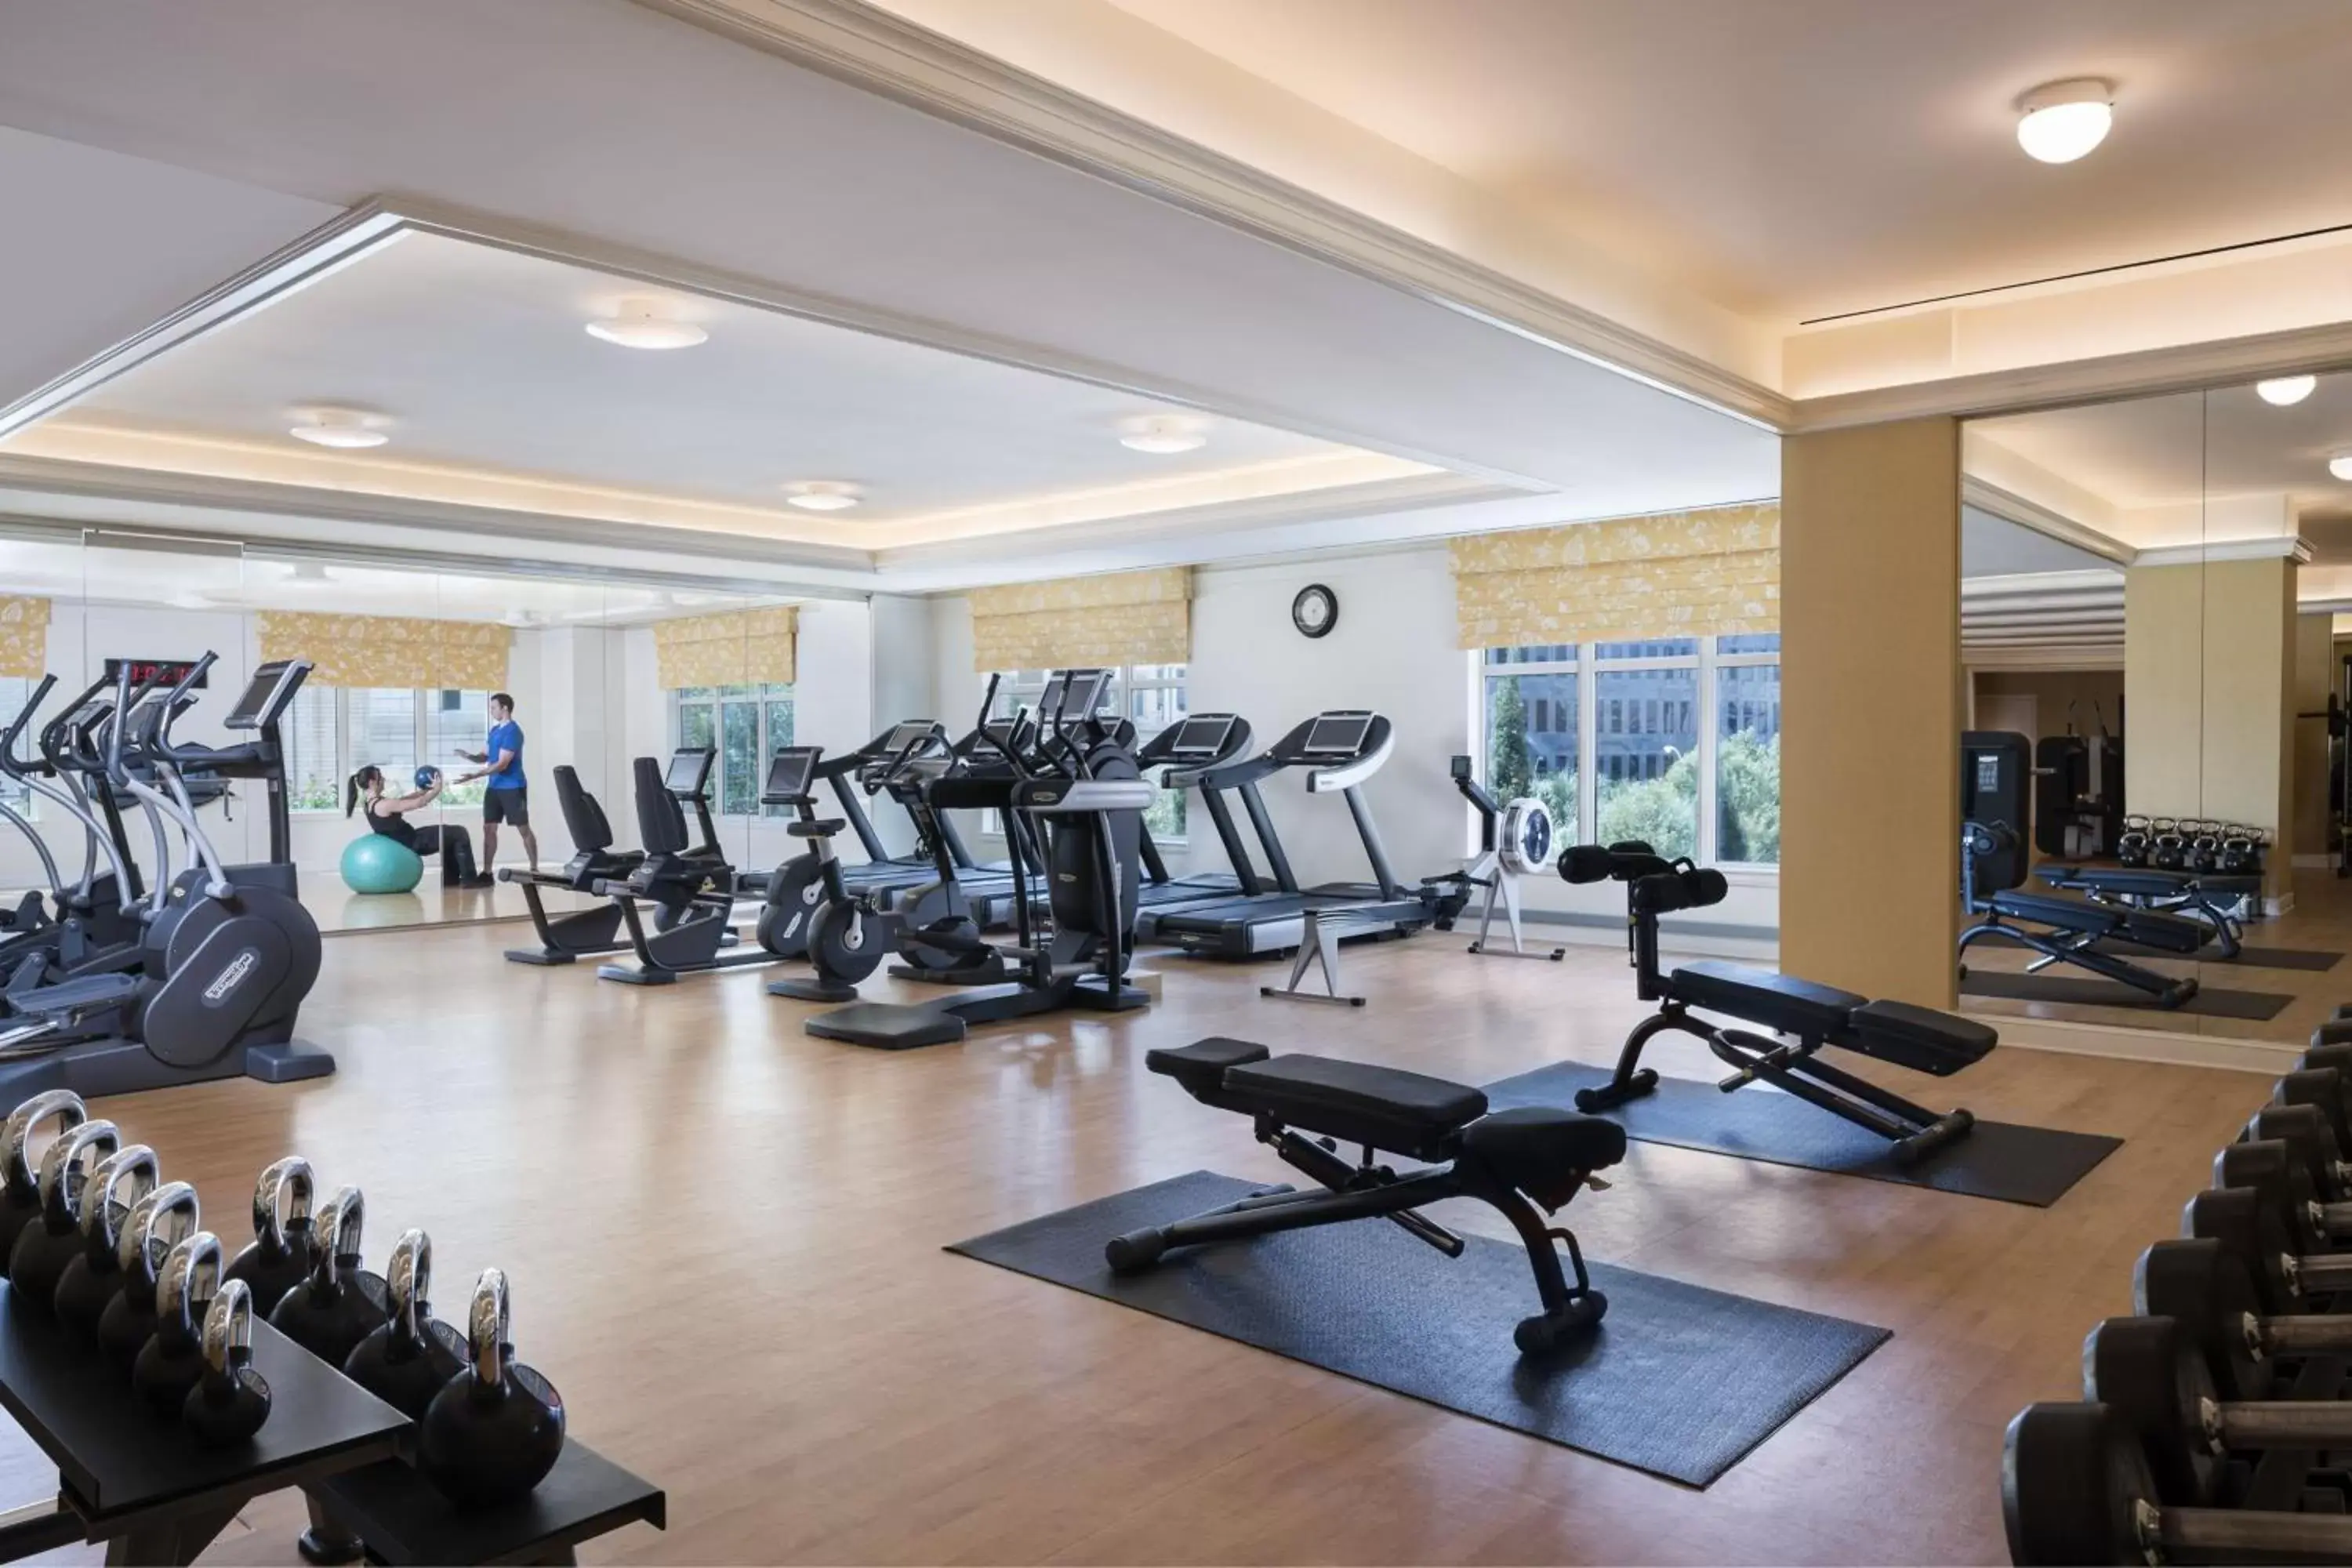 Fitness centre/facilities, Fitness Center/Facilities in The Ritz-Carlton, Dallas